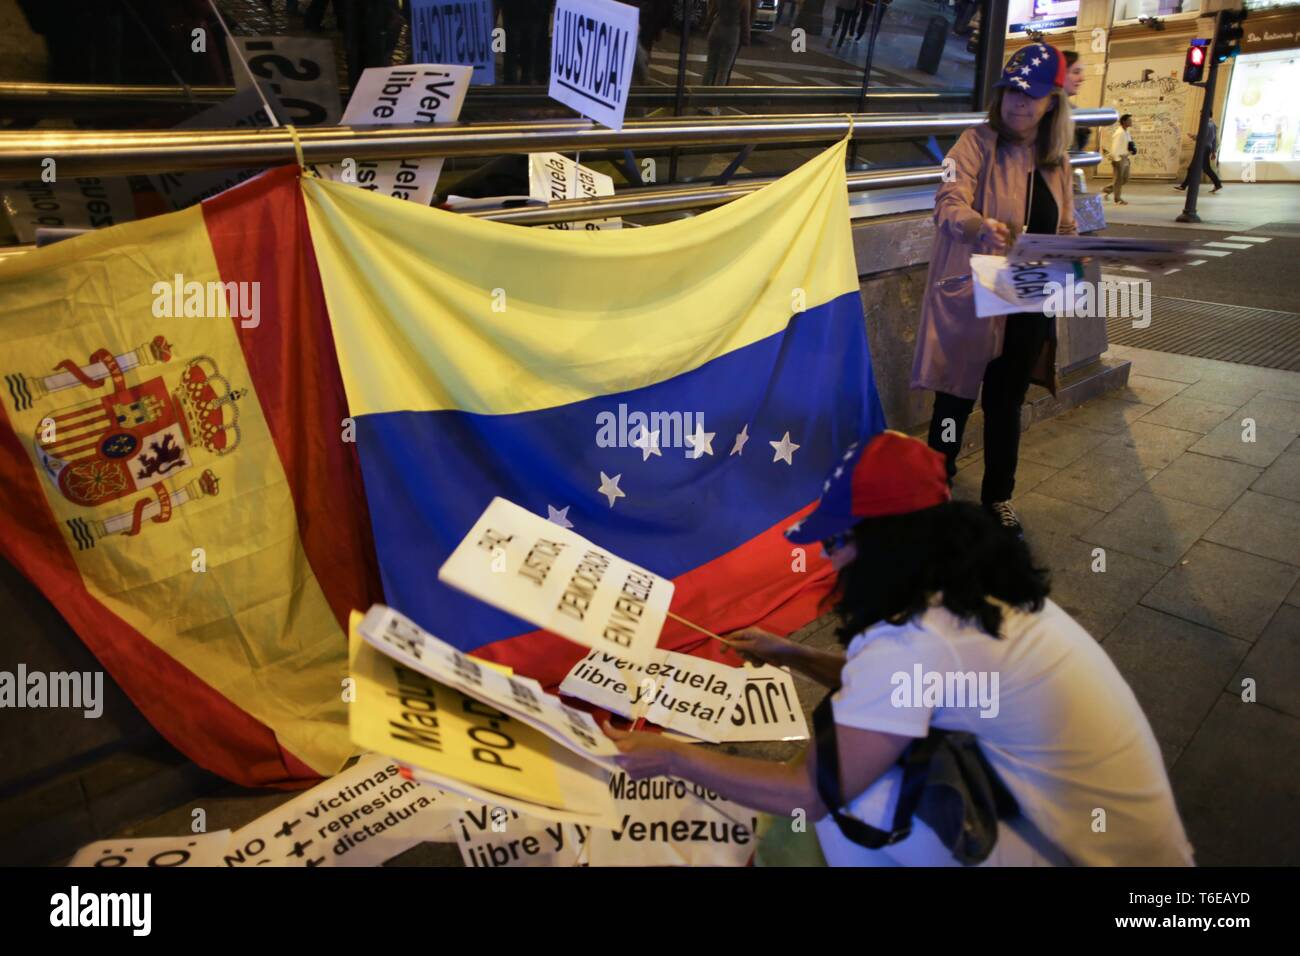 Manifestant vu avec des pancartes lors de la manifestation. Des centaines de personnes se sont réunies à la Puerta del Sol, Madrid à une manifestation appelée opération liberté, pour la liberté du Venezuela contre la dictature. Banque D'Images